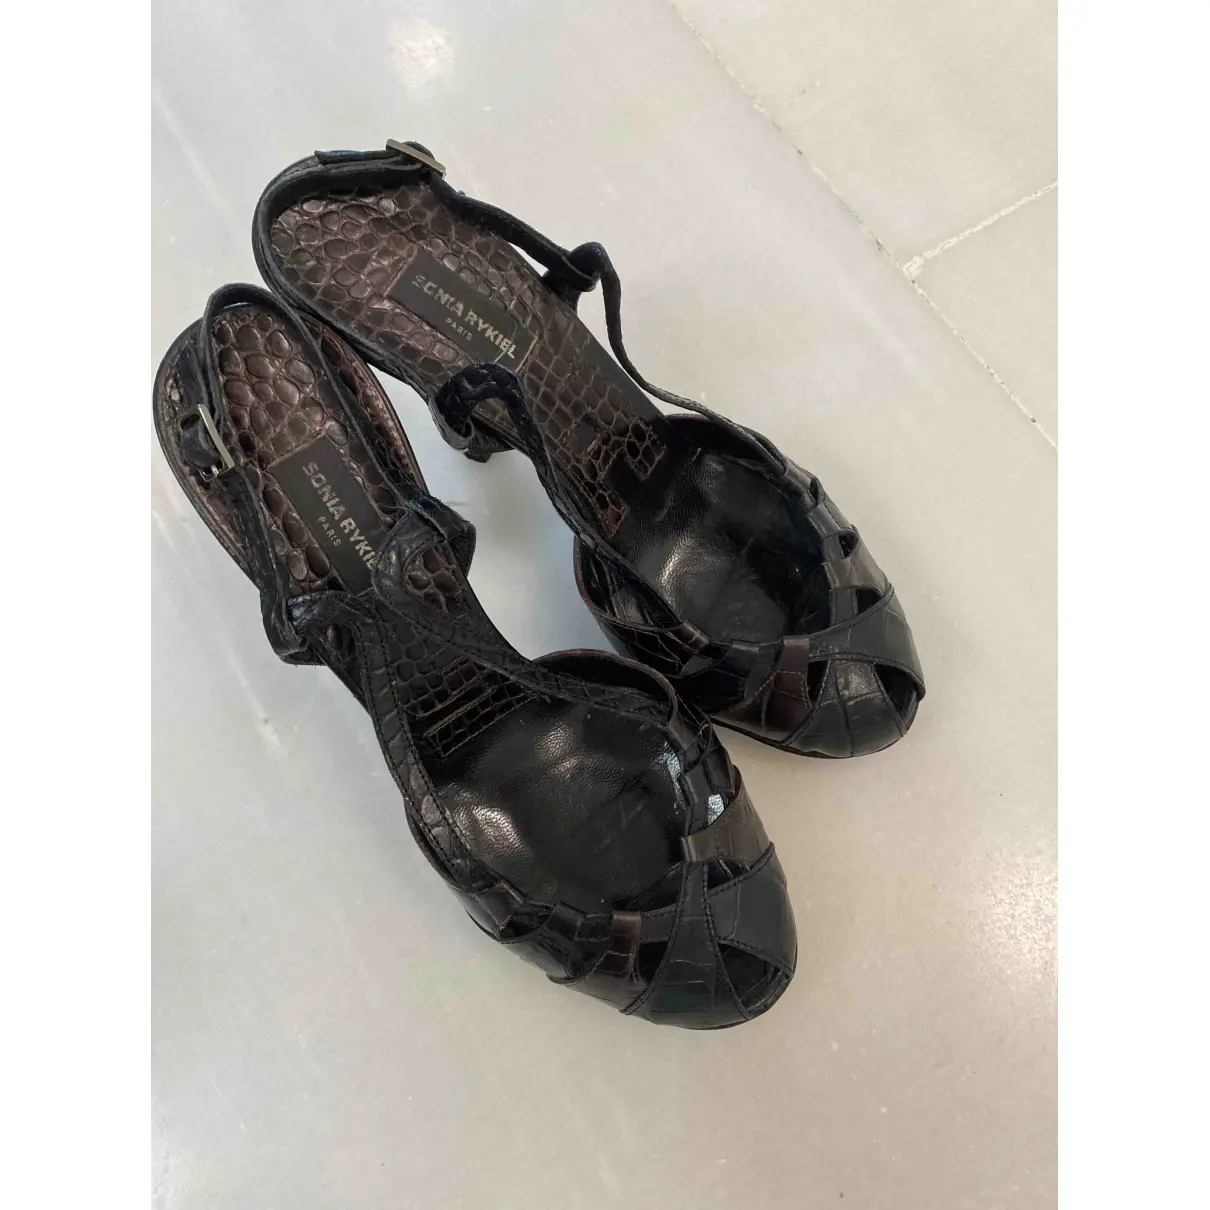 Leather sandals Sonia Rykiel - Vintage